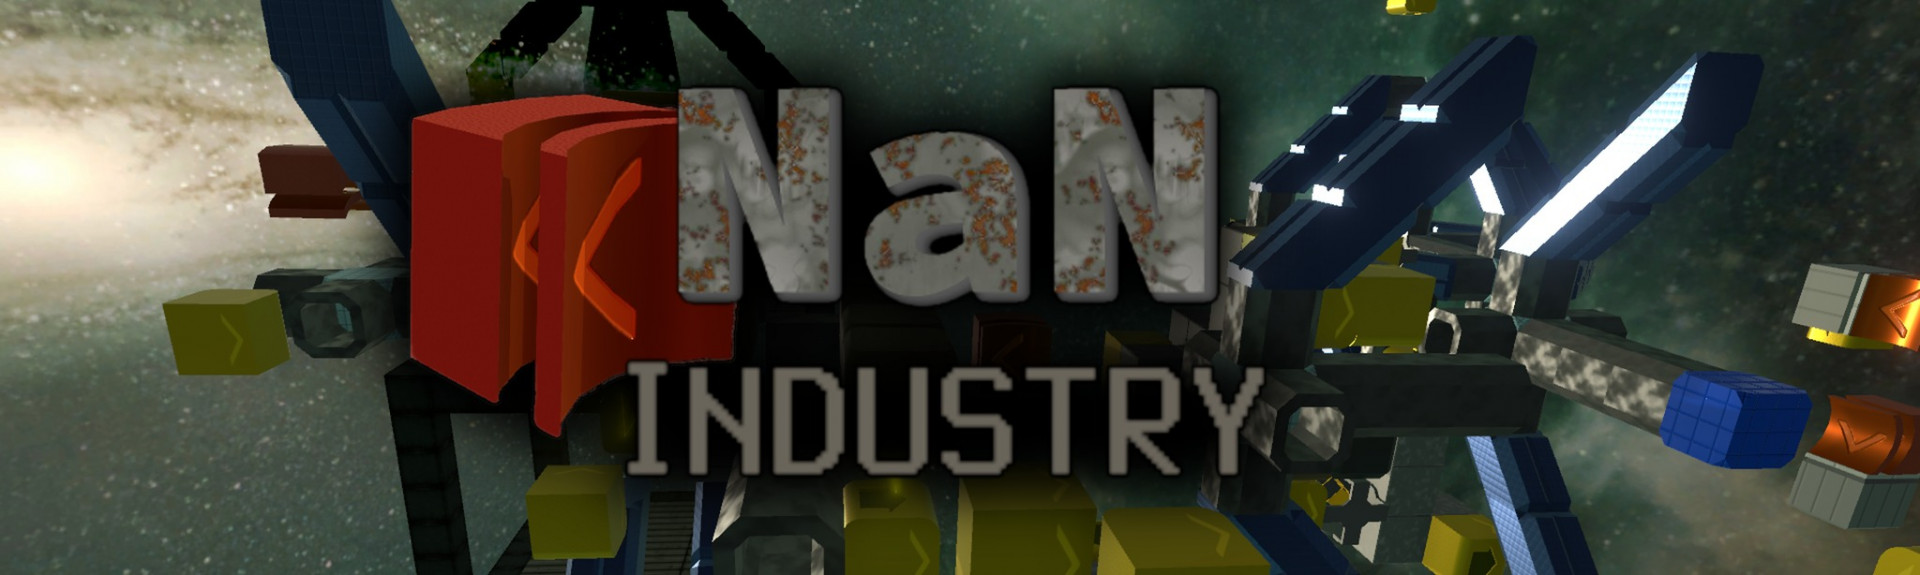 NaN Industry